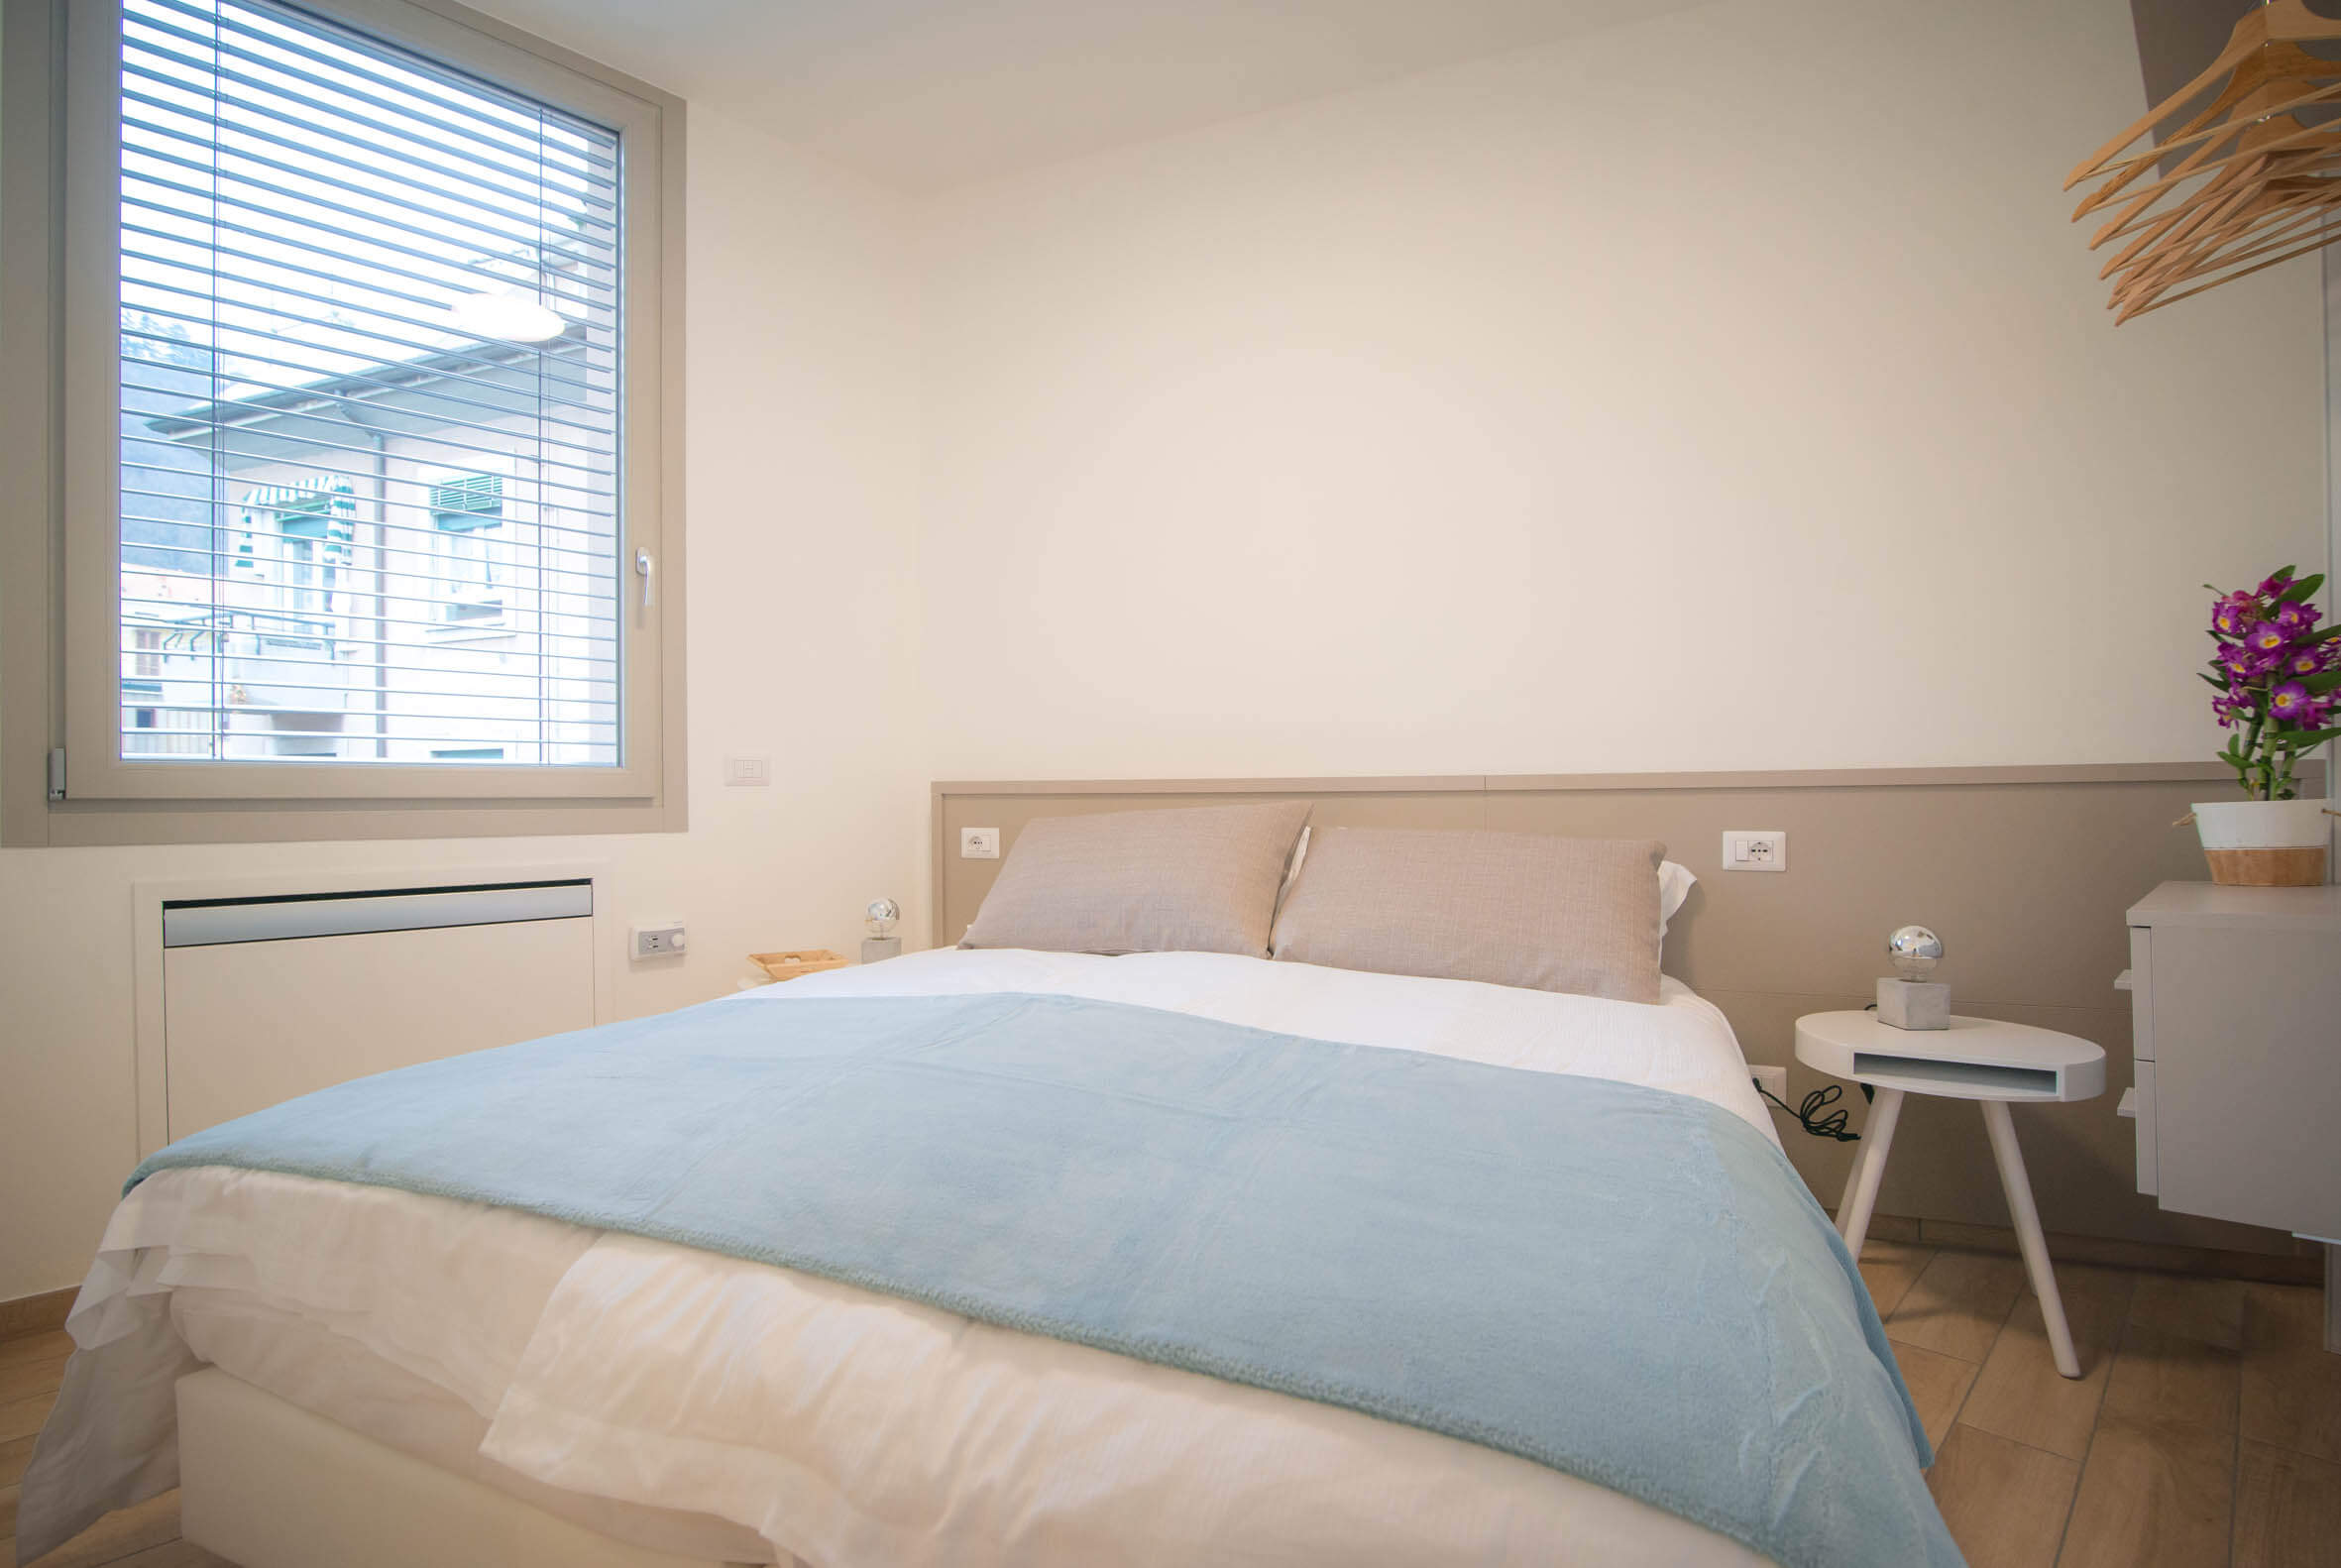 camera da letto con armadio con grucce a vista, lampada, comodini con piccole abat-jour e finesrta